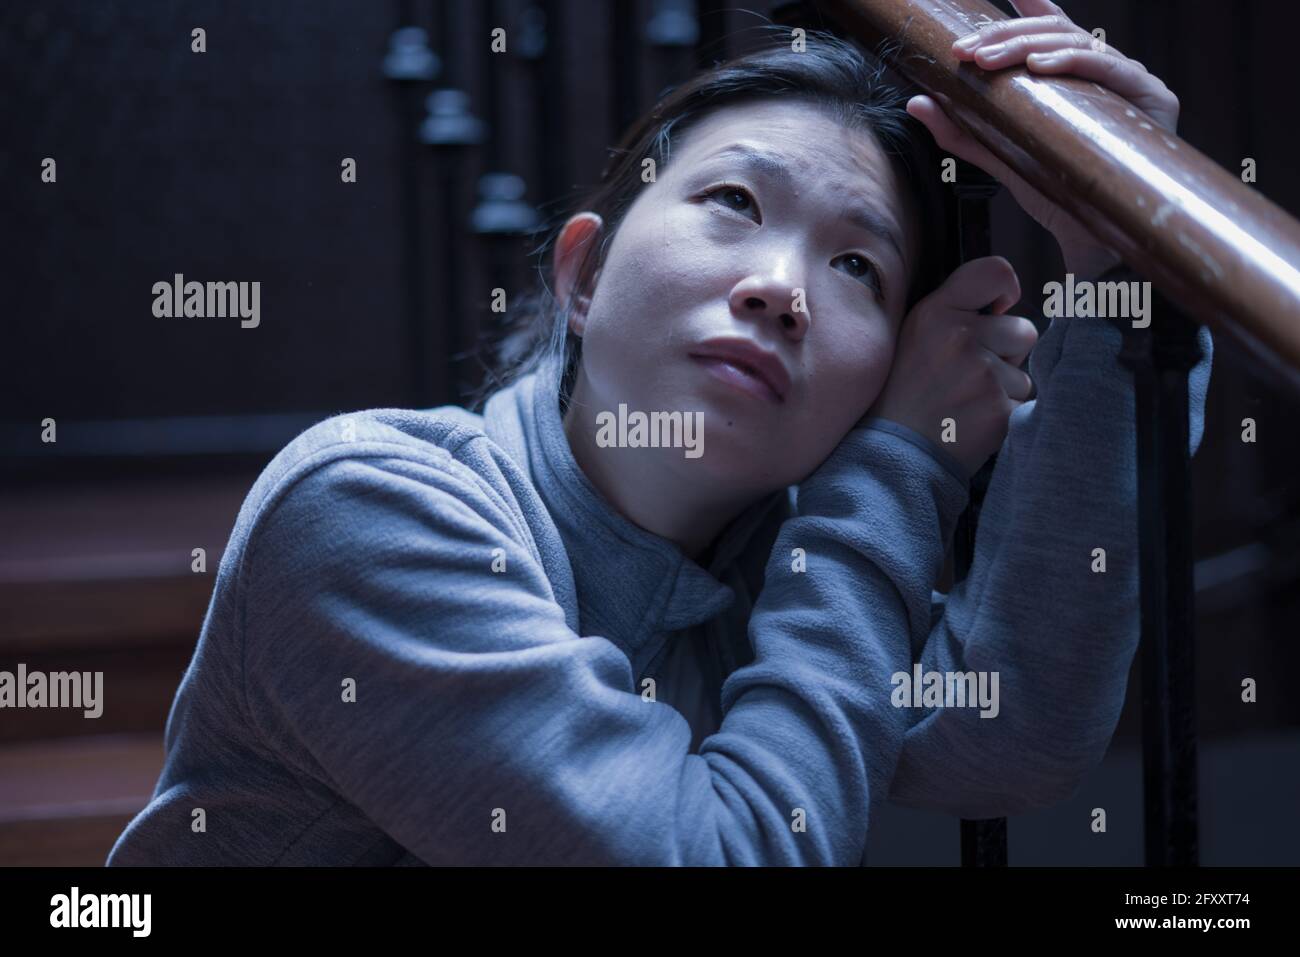 Jeune belle femme asiatique dans la douleur souffrant de dépression - dramatique Portrait à l'intérieur sur l'escalier d'une fille chinoise triste et déprimée comme victime de l'intimidation Banque D'Images